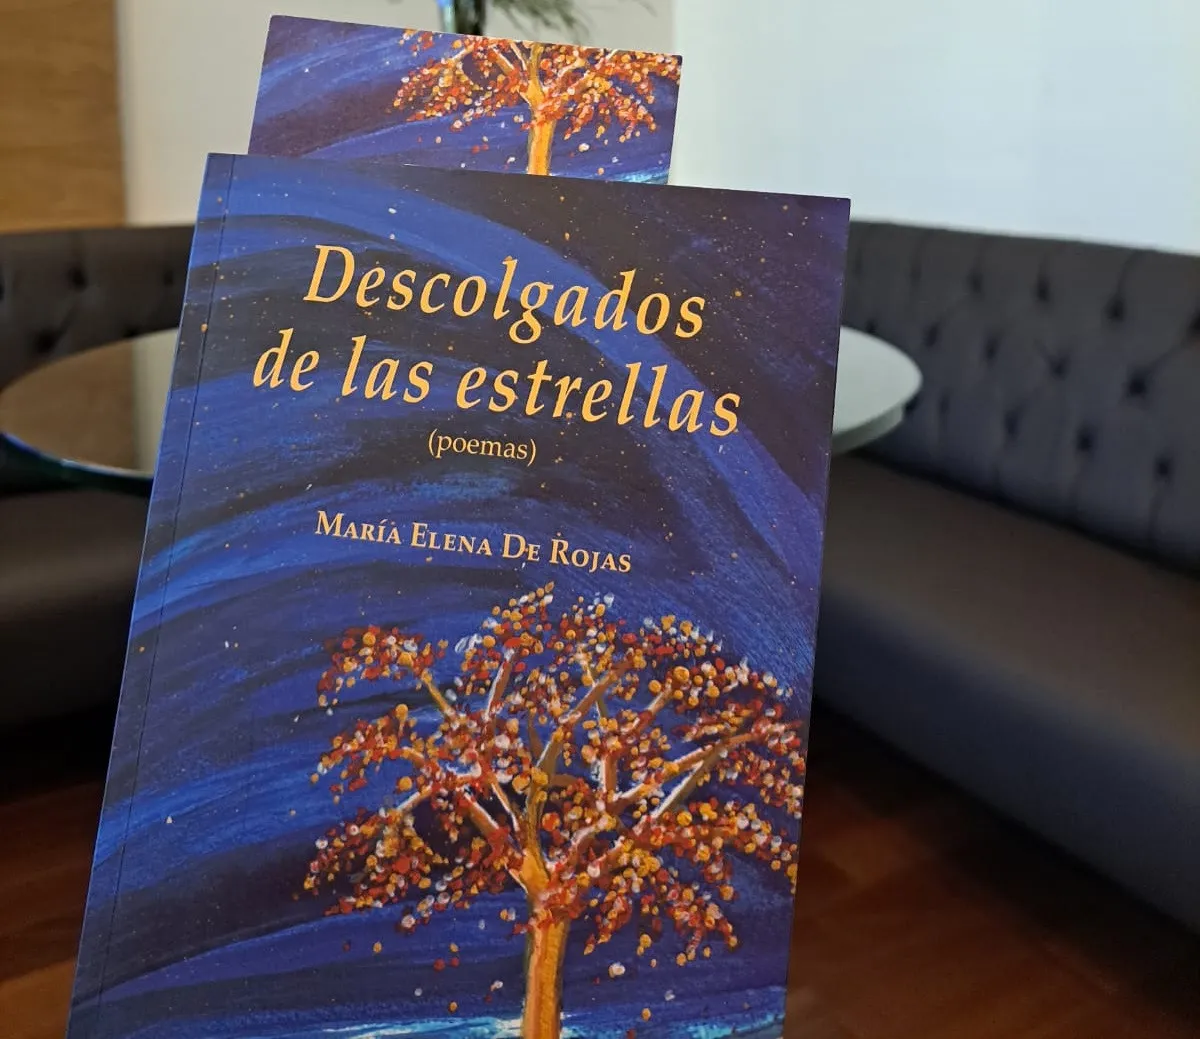 Presentan con éxito poemario Descolgados de las estrellas, de María Elena de Rojas